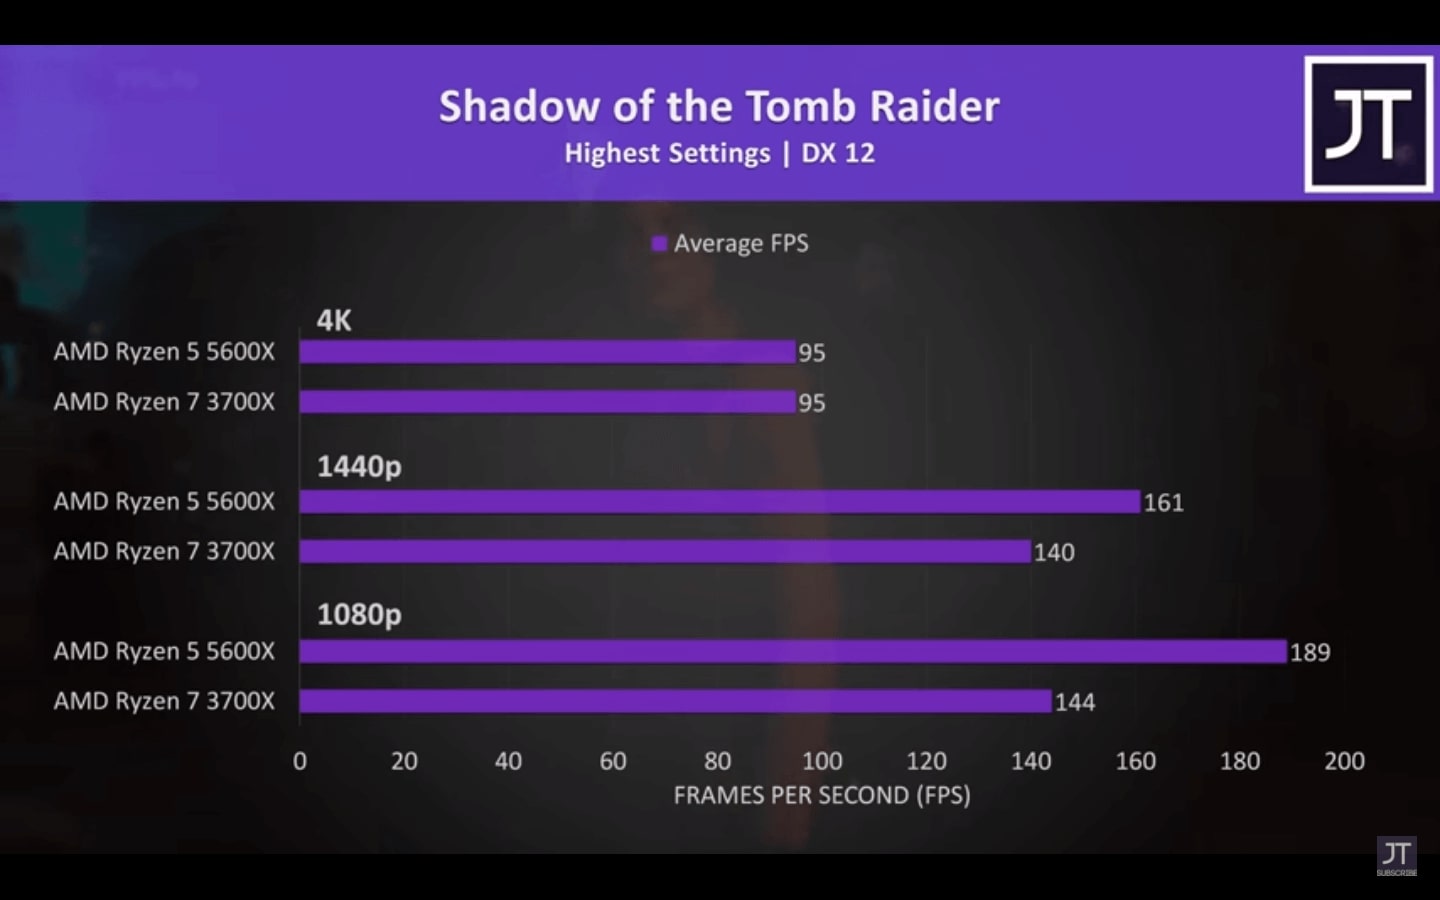 Ryzen 5 5600x vs Ryzen 7 3700x - Shadow of The Tomb Raider